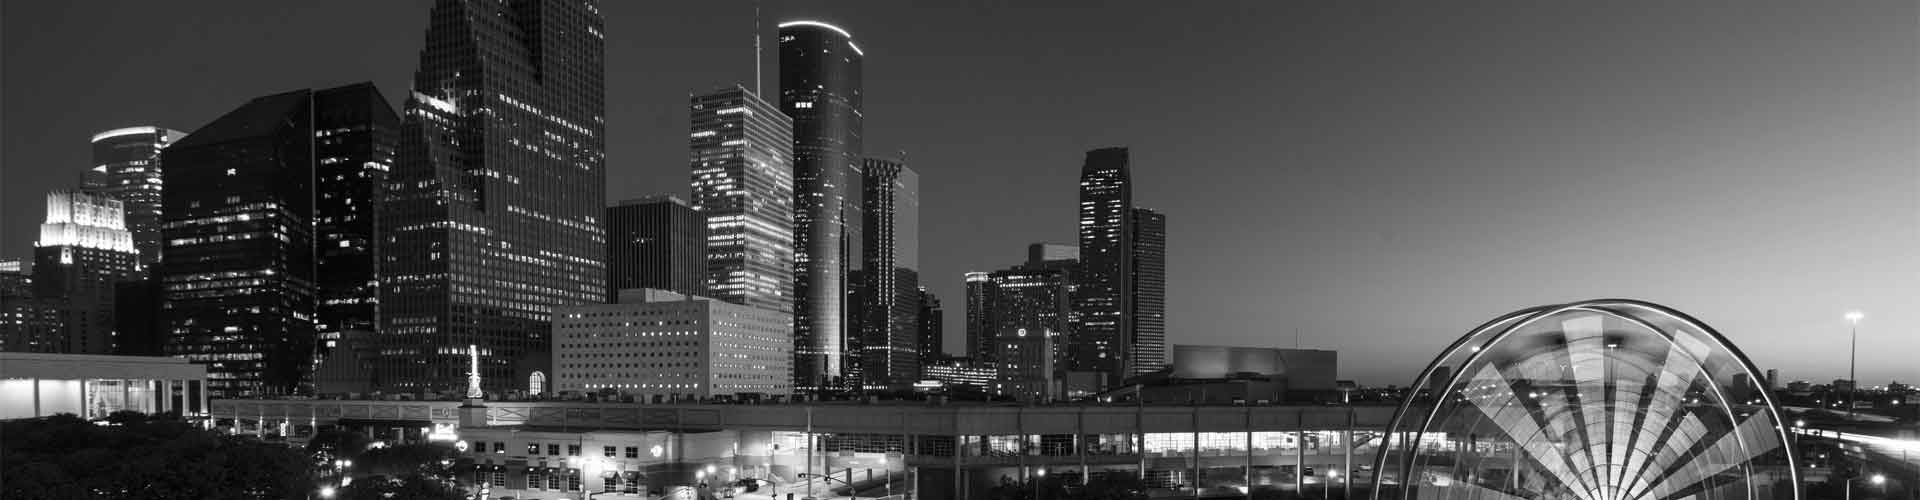 Houston Texas Skyline at night